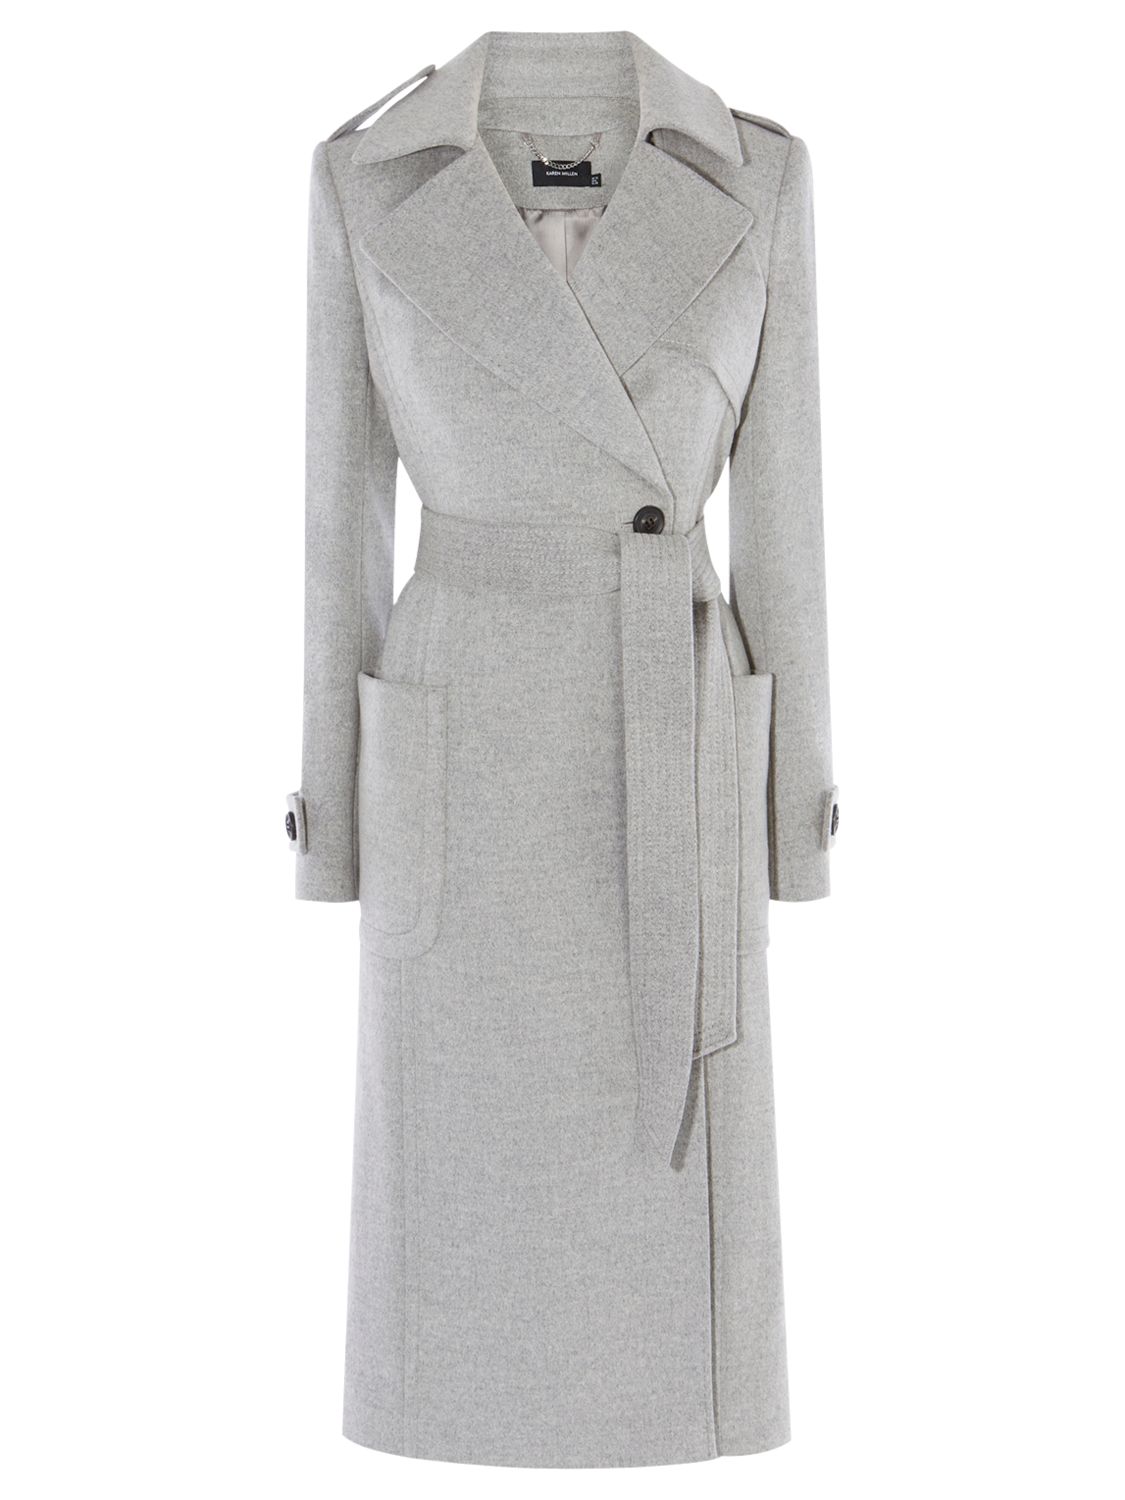 Karen Millen Investment Wool Coat, Grey, 6